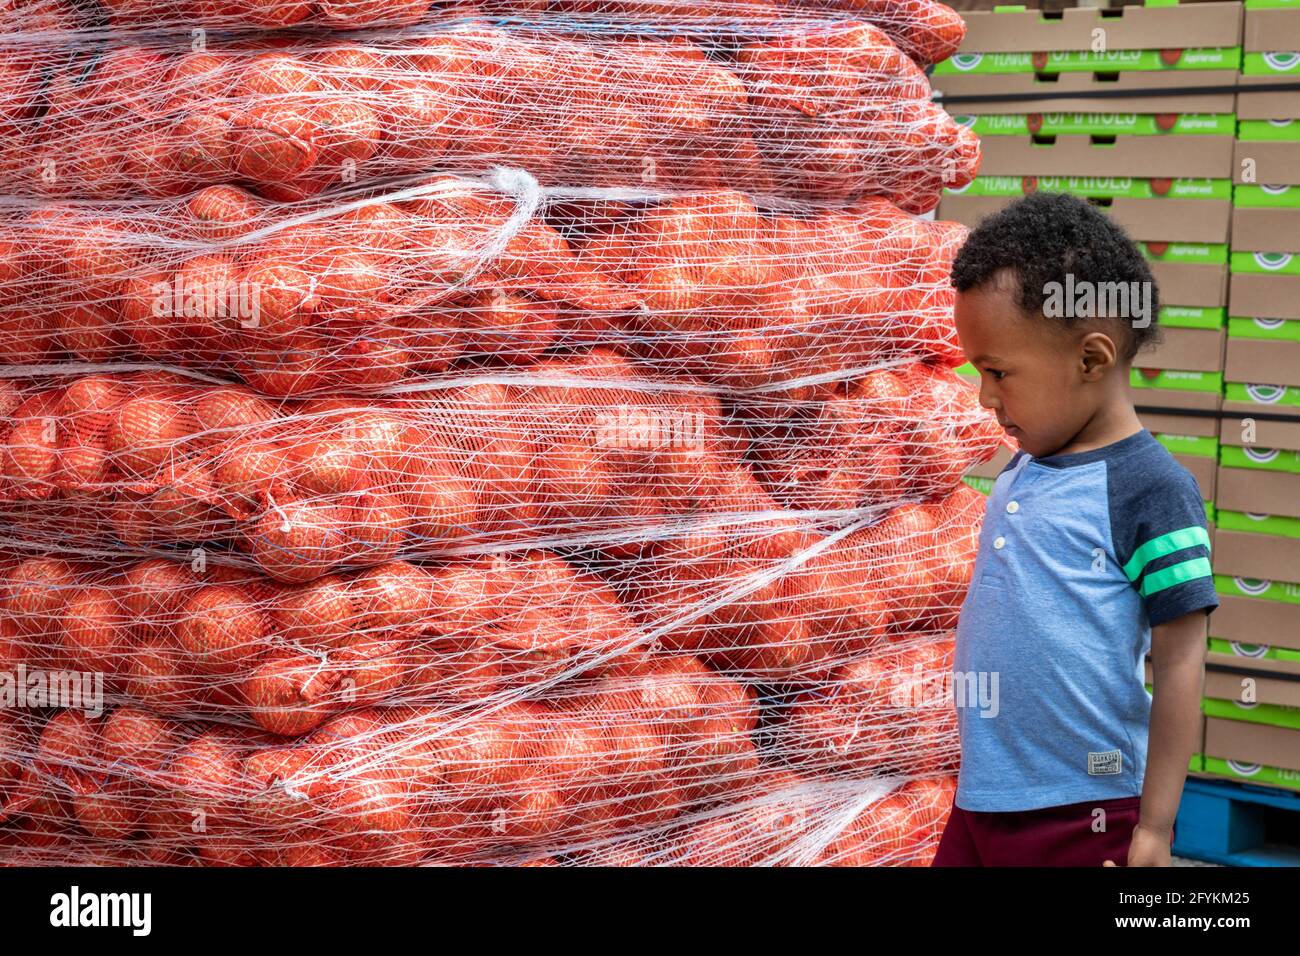 Detroit, Michigan - UN bambino ispeziona pile di cipolle mentre i volontari nel quartiere Morningside distribuiscono cibo gratuito in una parte a basso reddito della c Foto Stock